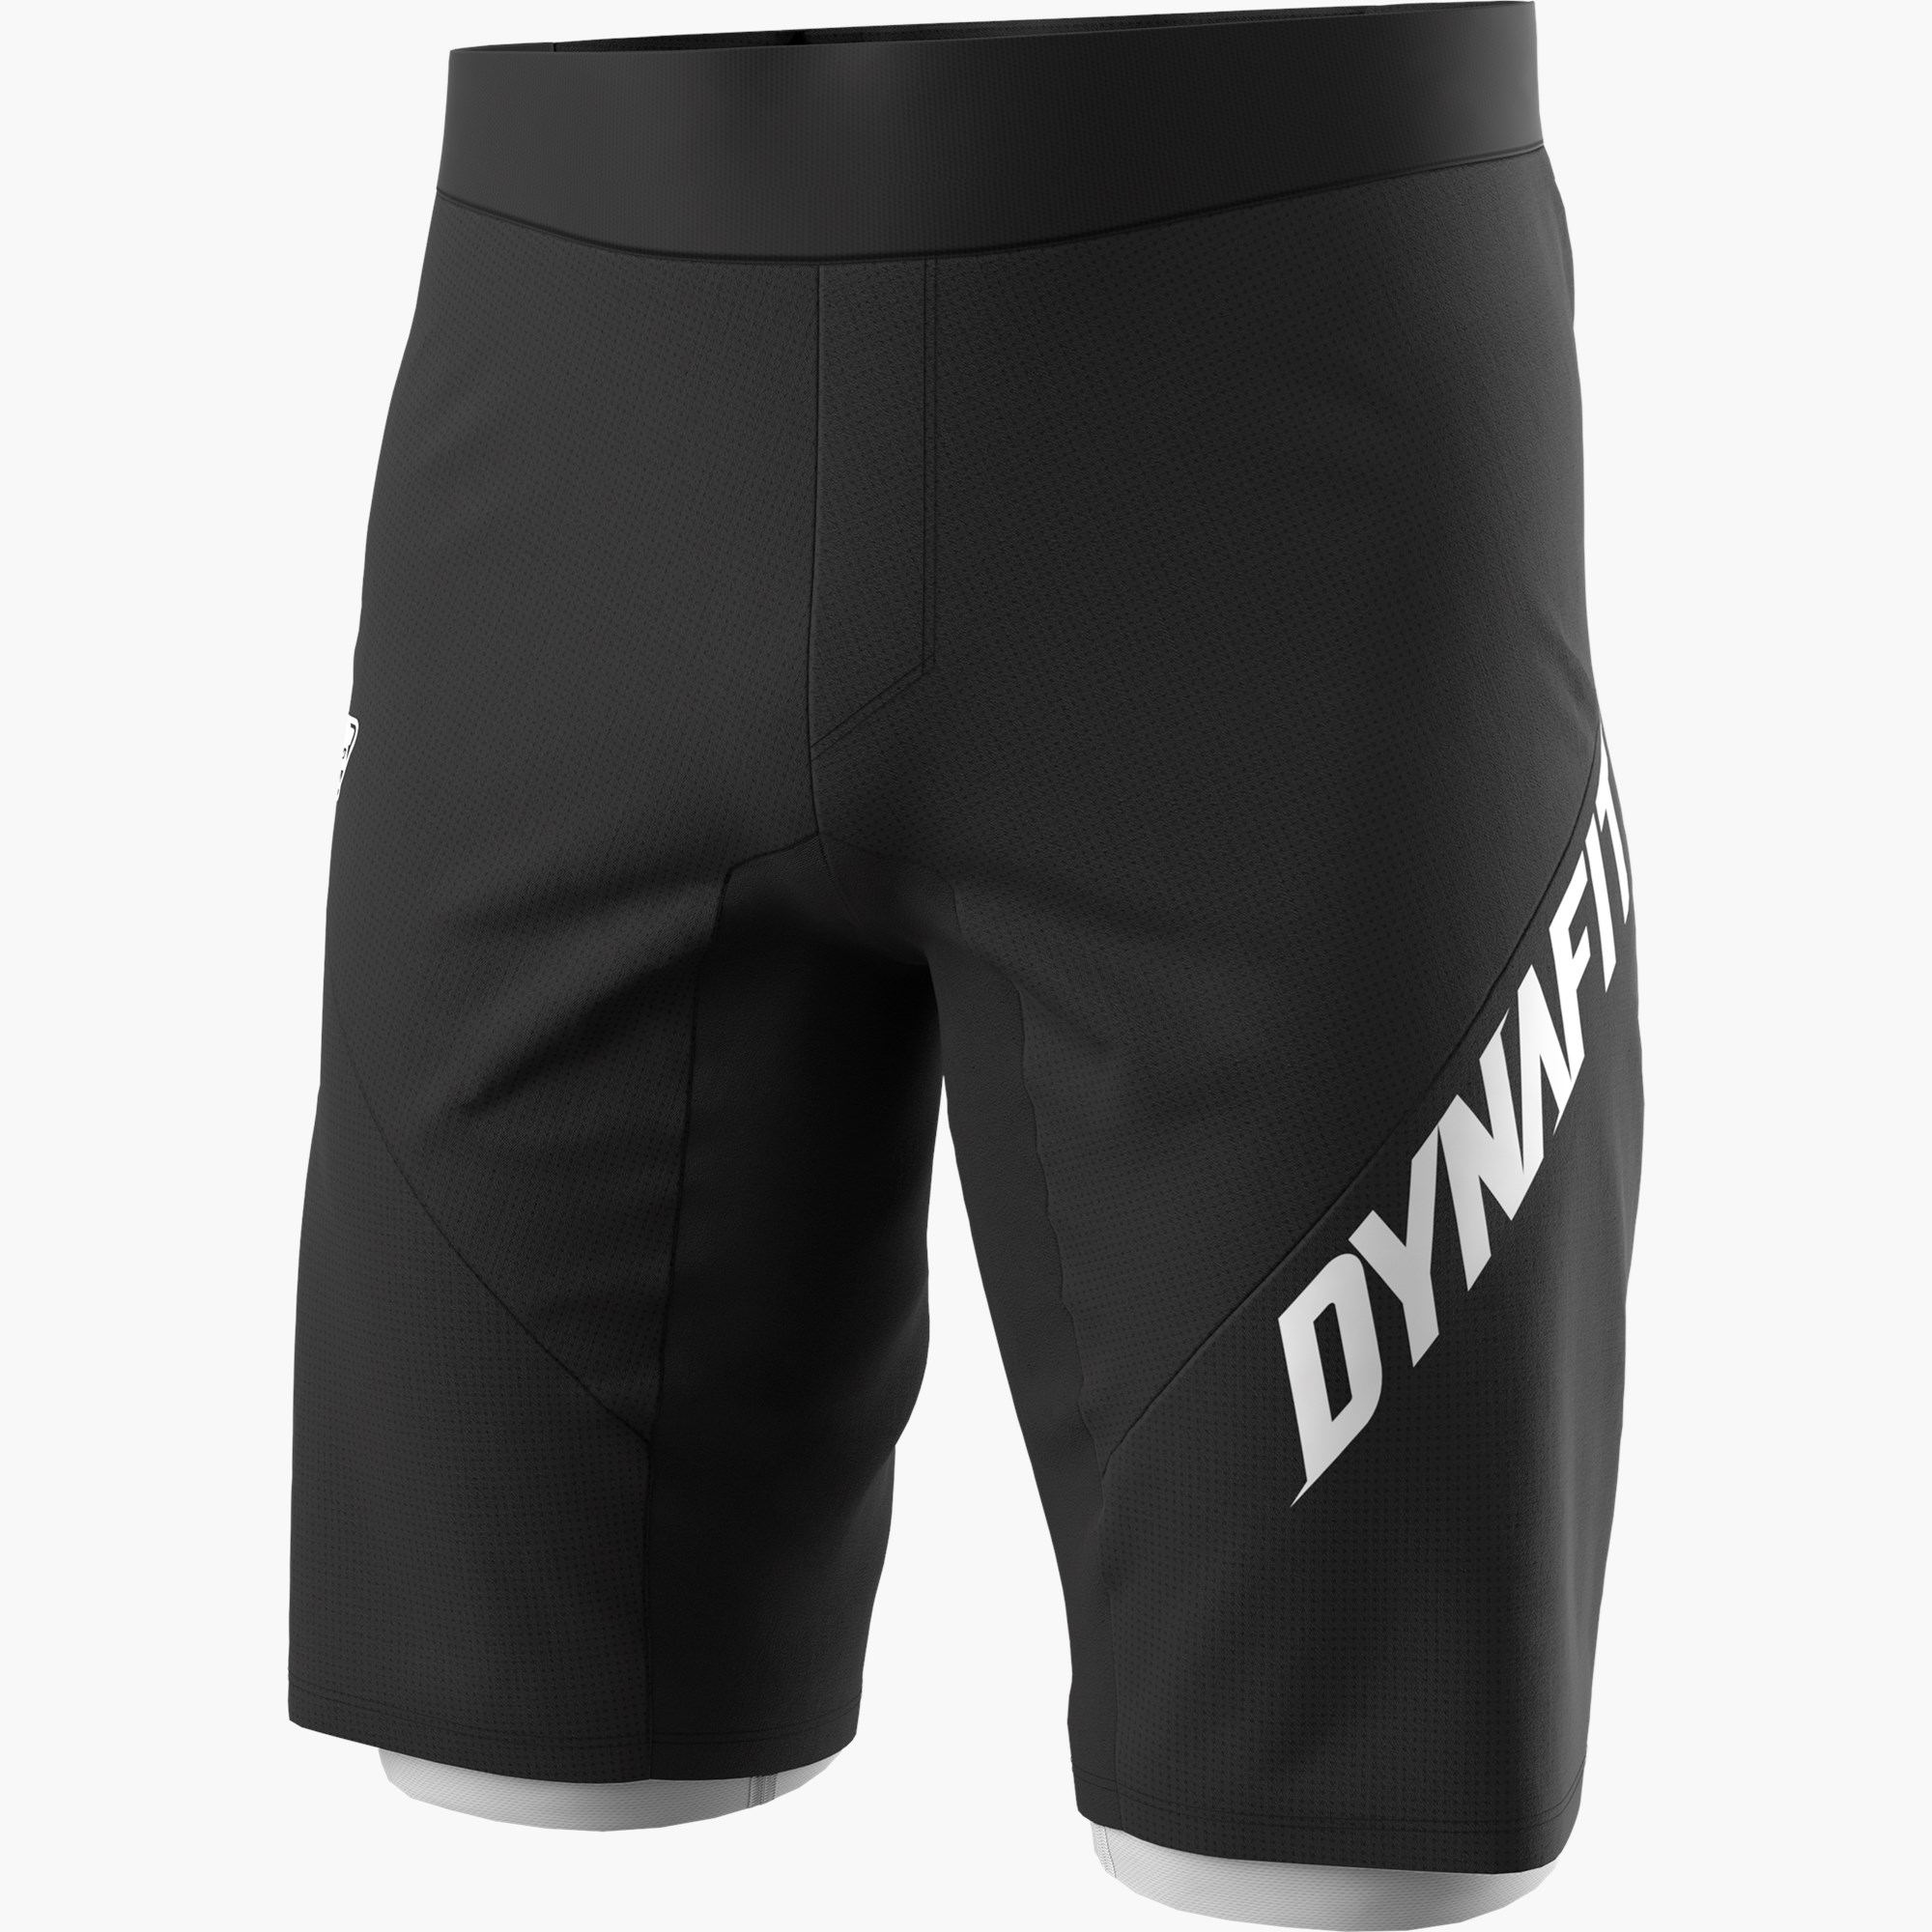 Ride Light 2in1 Shorts Men Dynafit® UK, 50% OFF